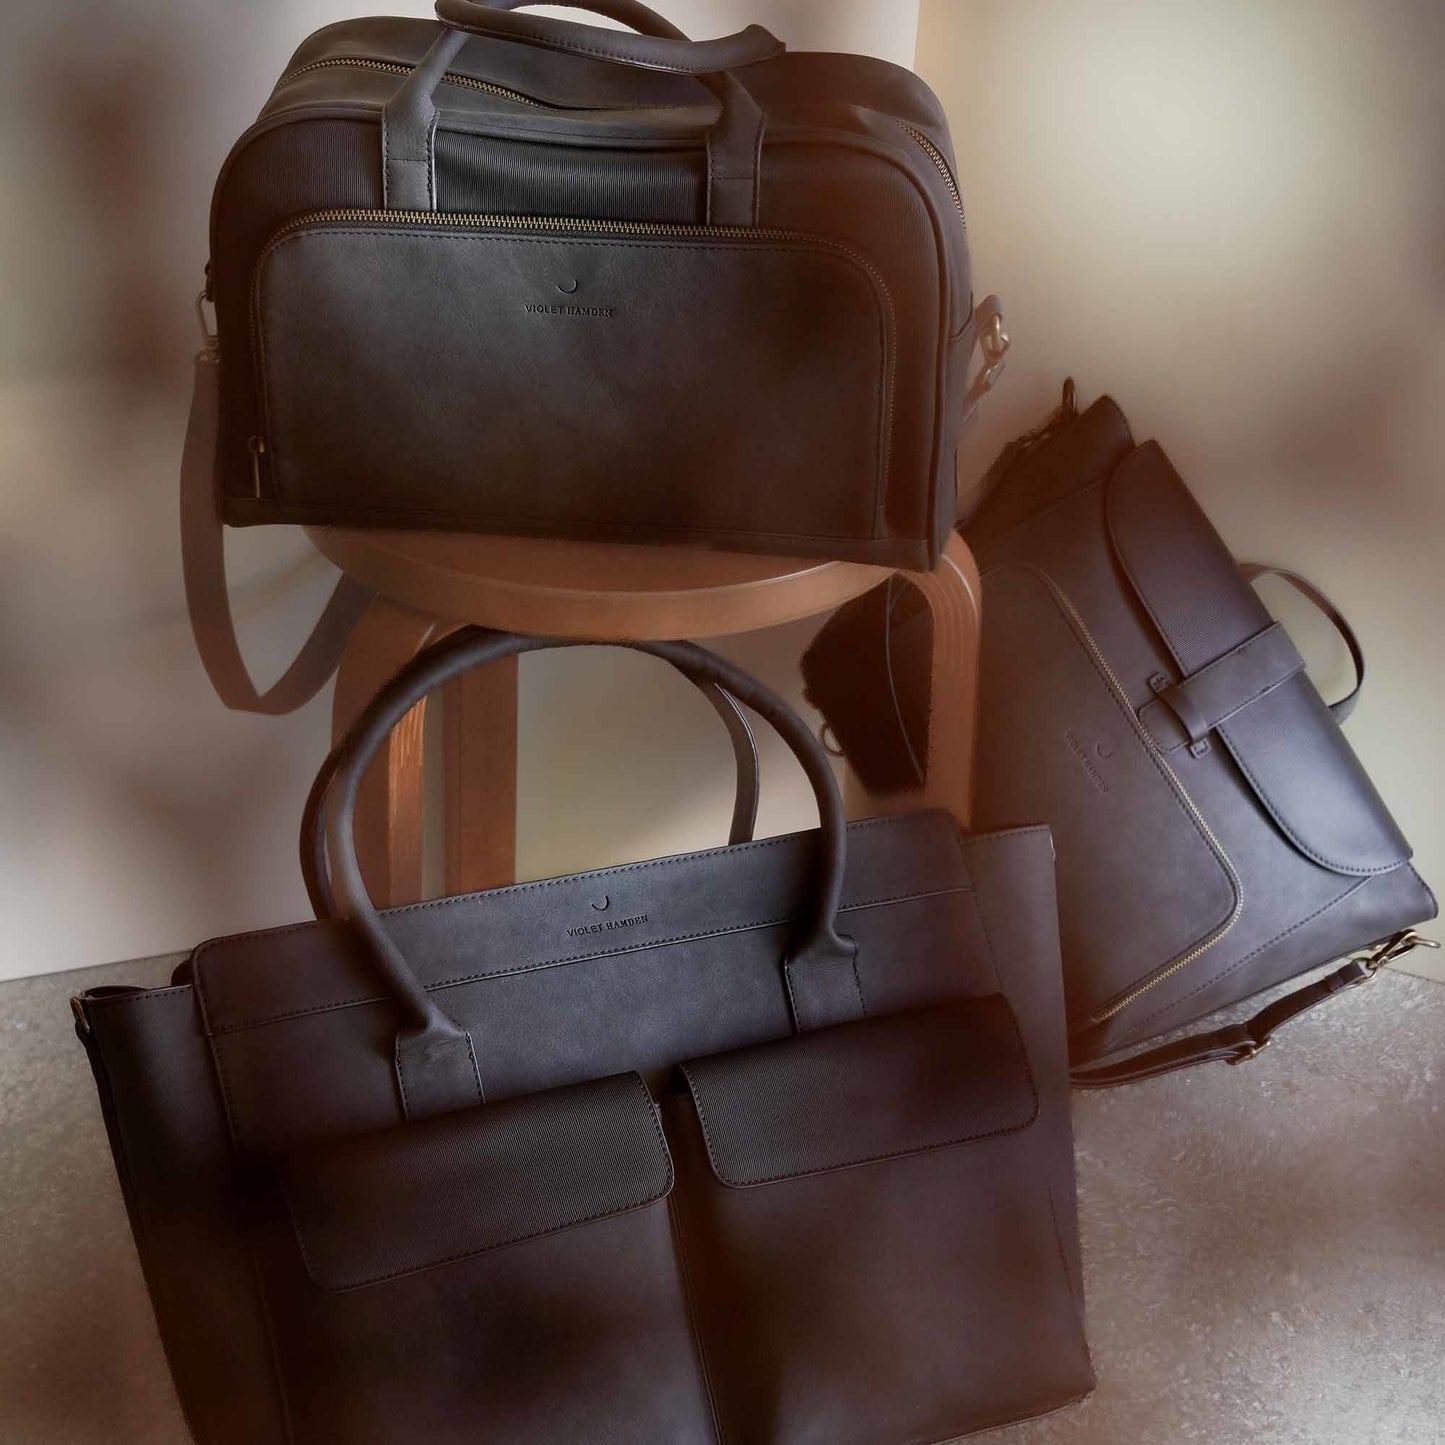 Essential Bag schwarze Handtasche